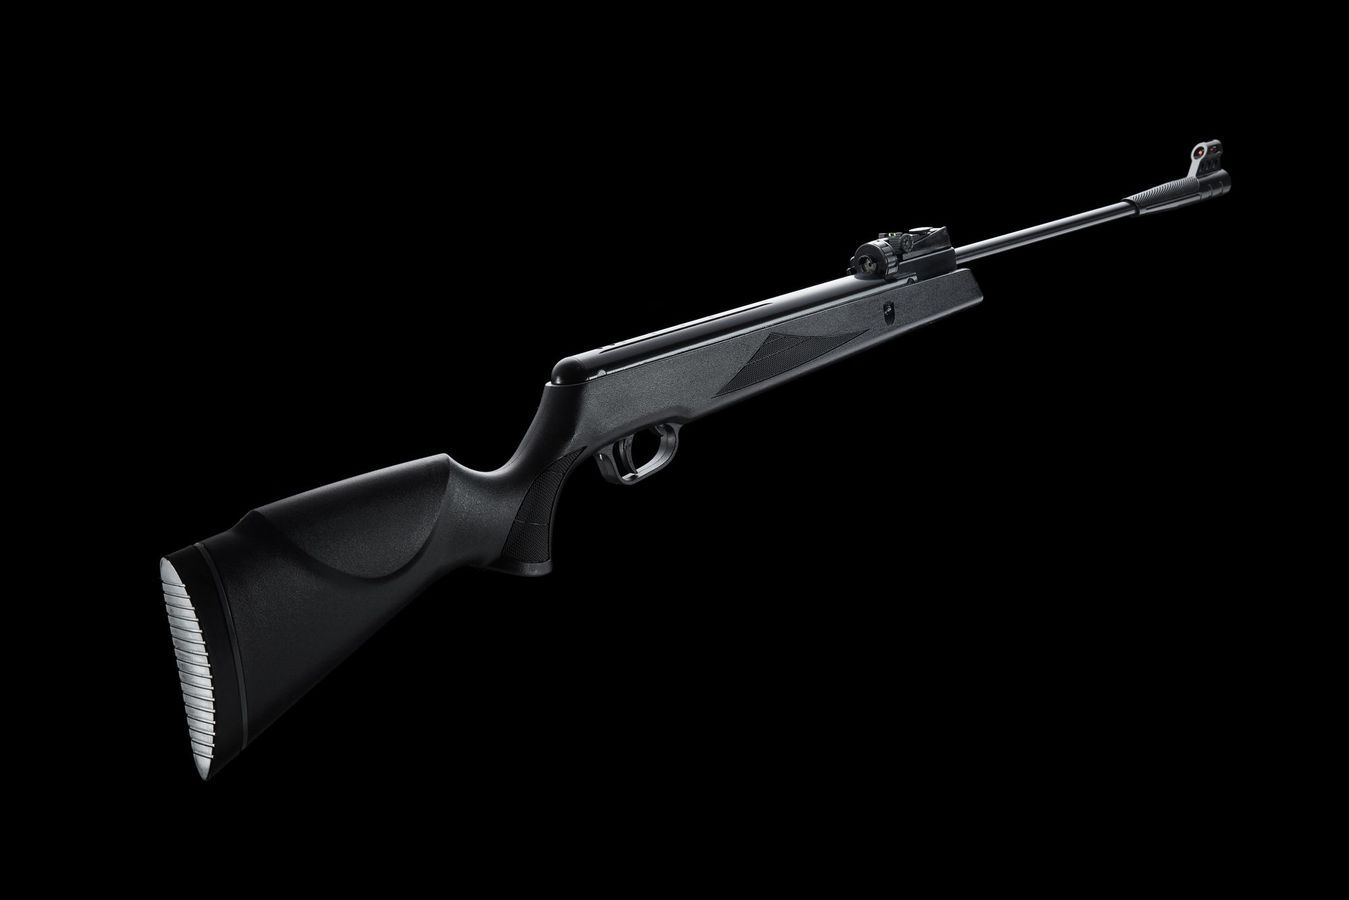 Pistolet SNOWPEAK SP500 à air comprimé - 4.5mm (6 joules) - Plomb